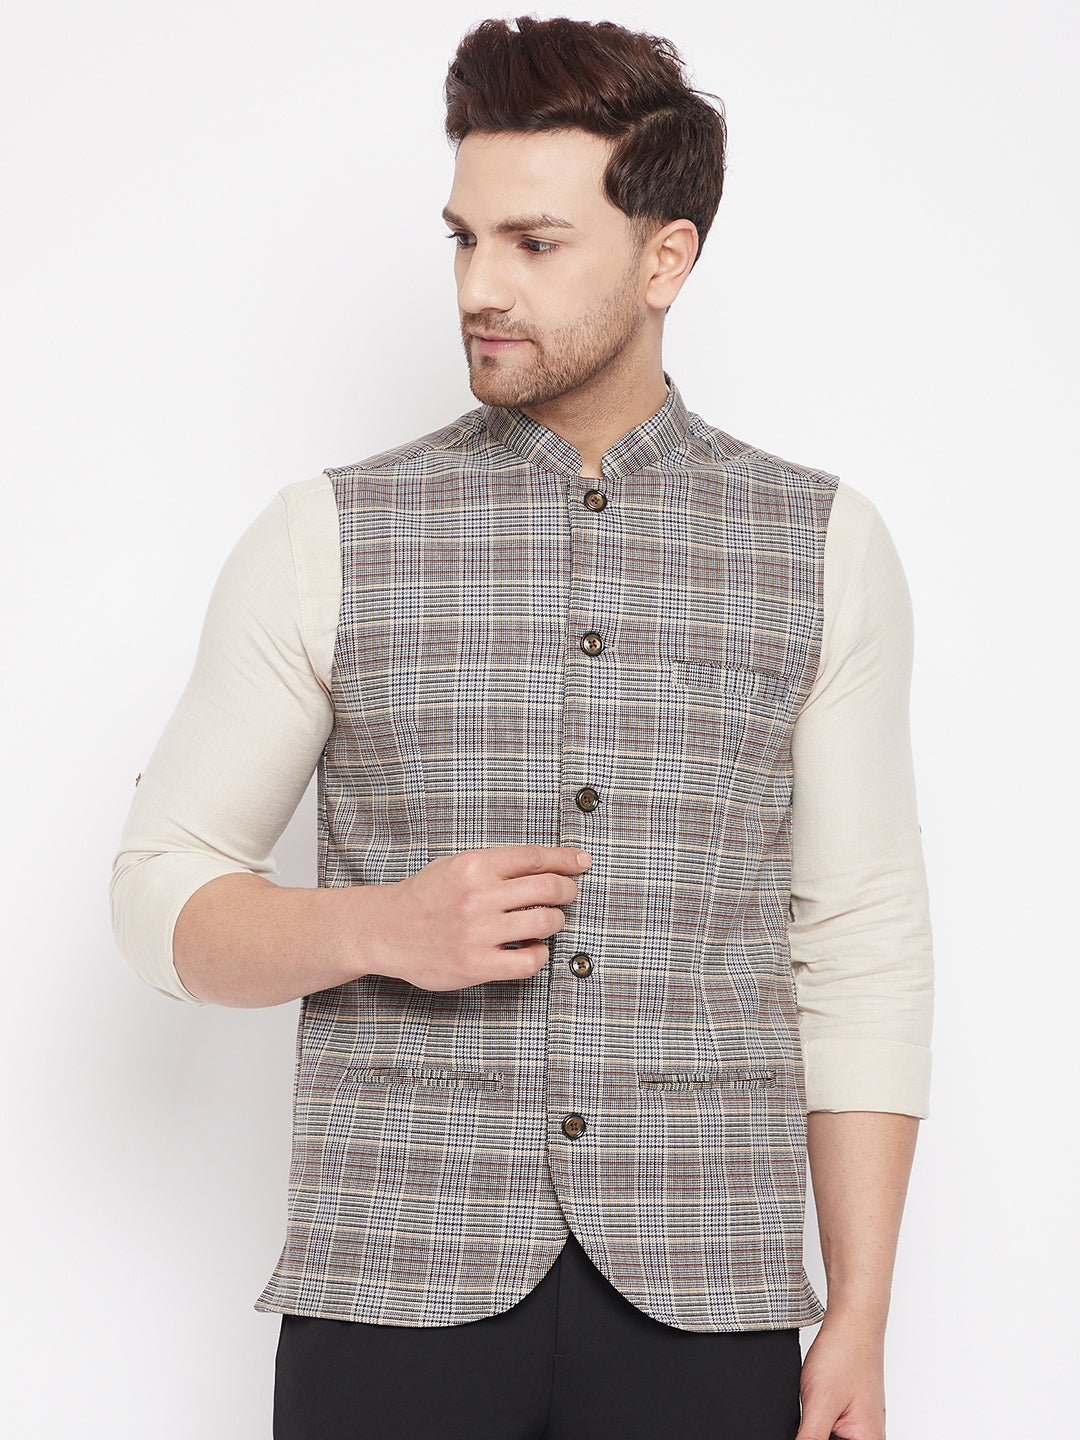 Men's Multi Color Nehru Jacket-Contrast Lining-Free Pocket Square - Even Apparels